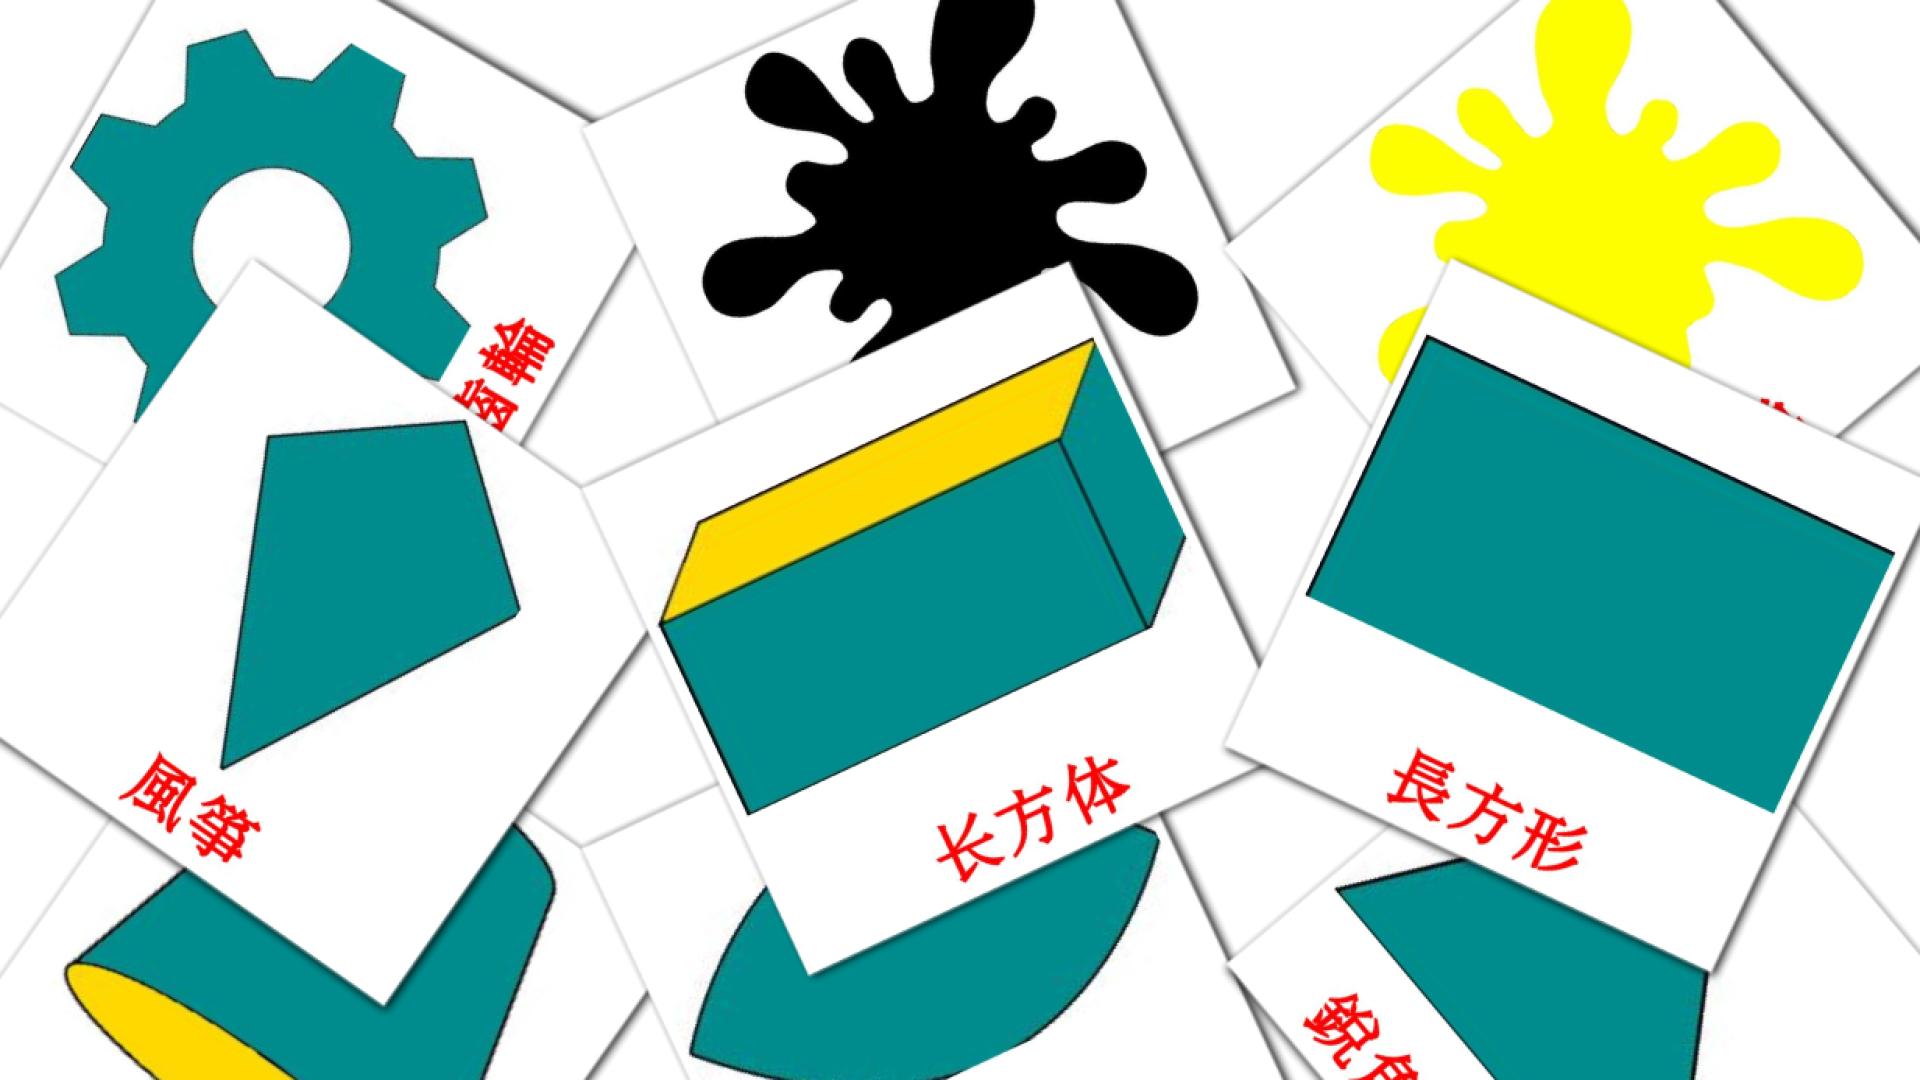 数学 chinese(Traditional) vocabulary flashcards